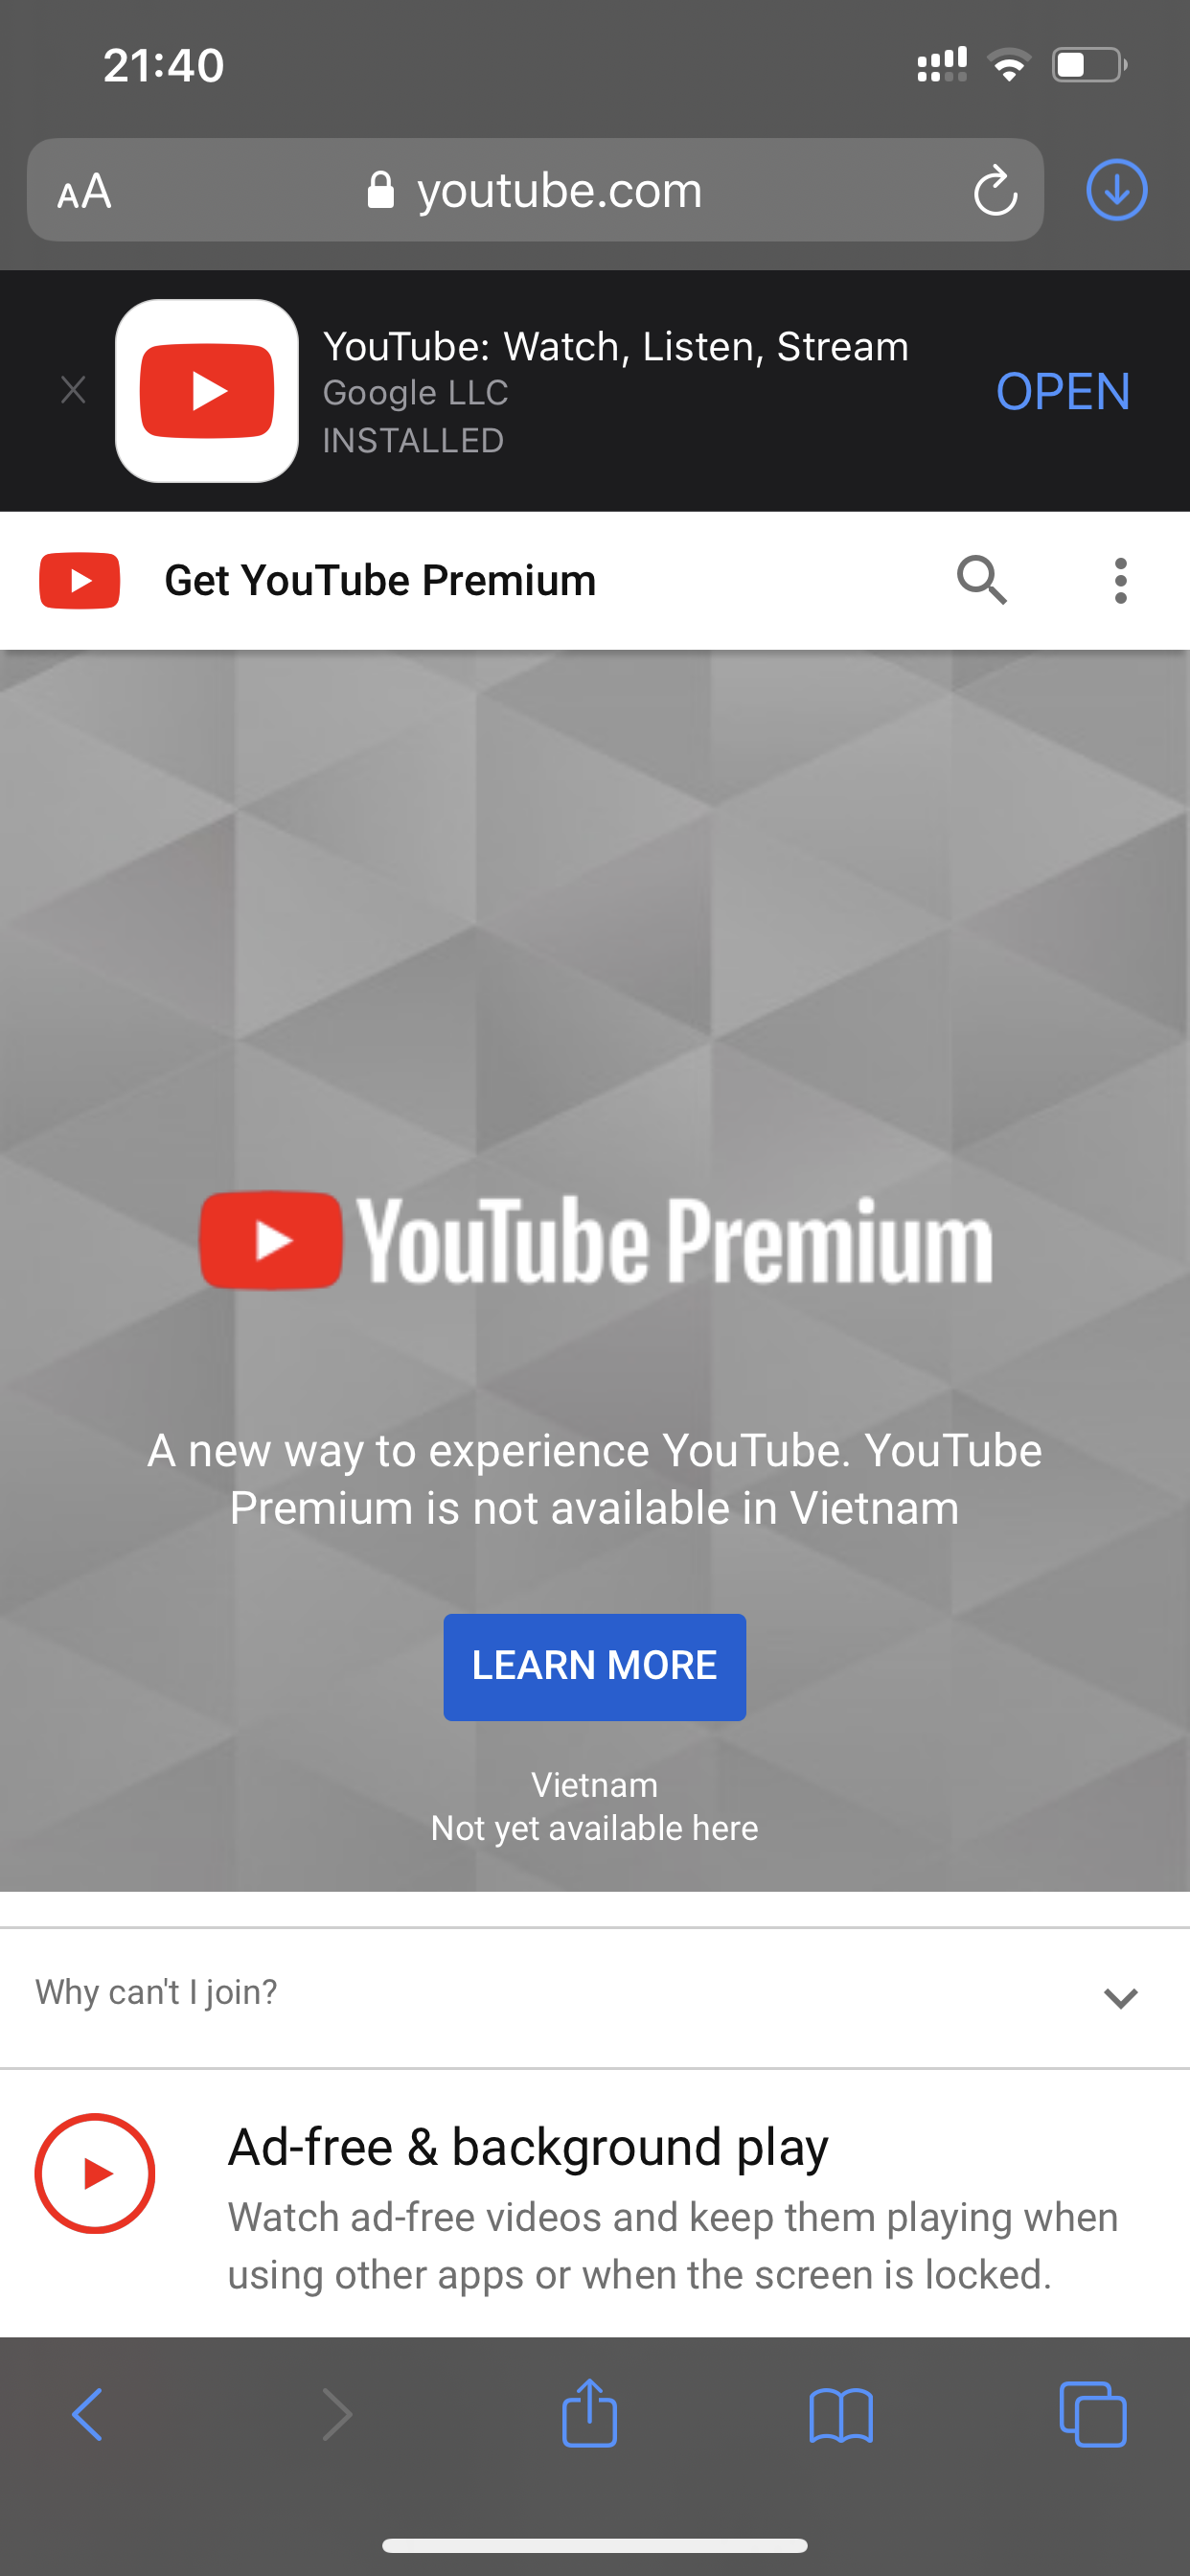 Không muốn bị quảng cáo gián đoạn trong quá trình xem video trên YouTube? Kích hoạt tính năng YouTube Premium và tận hưởng trải nghiệm xem video hoàn toàn không có quảng cáo. Hãy xem hình ảnh để có thêm thông tin về tính năng hữu ích này.